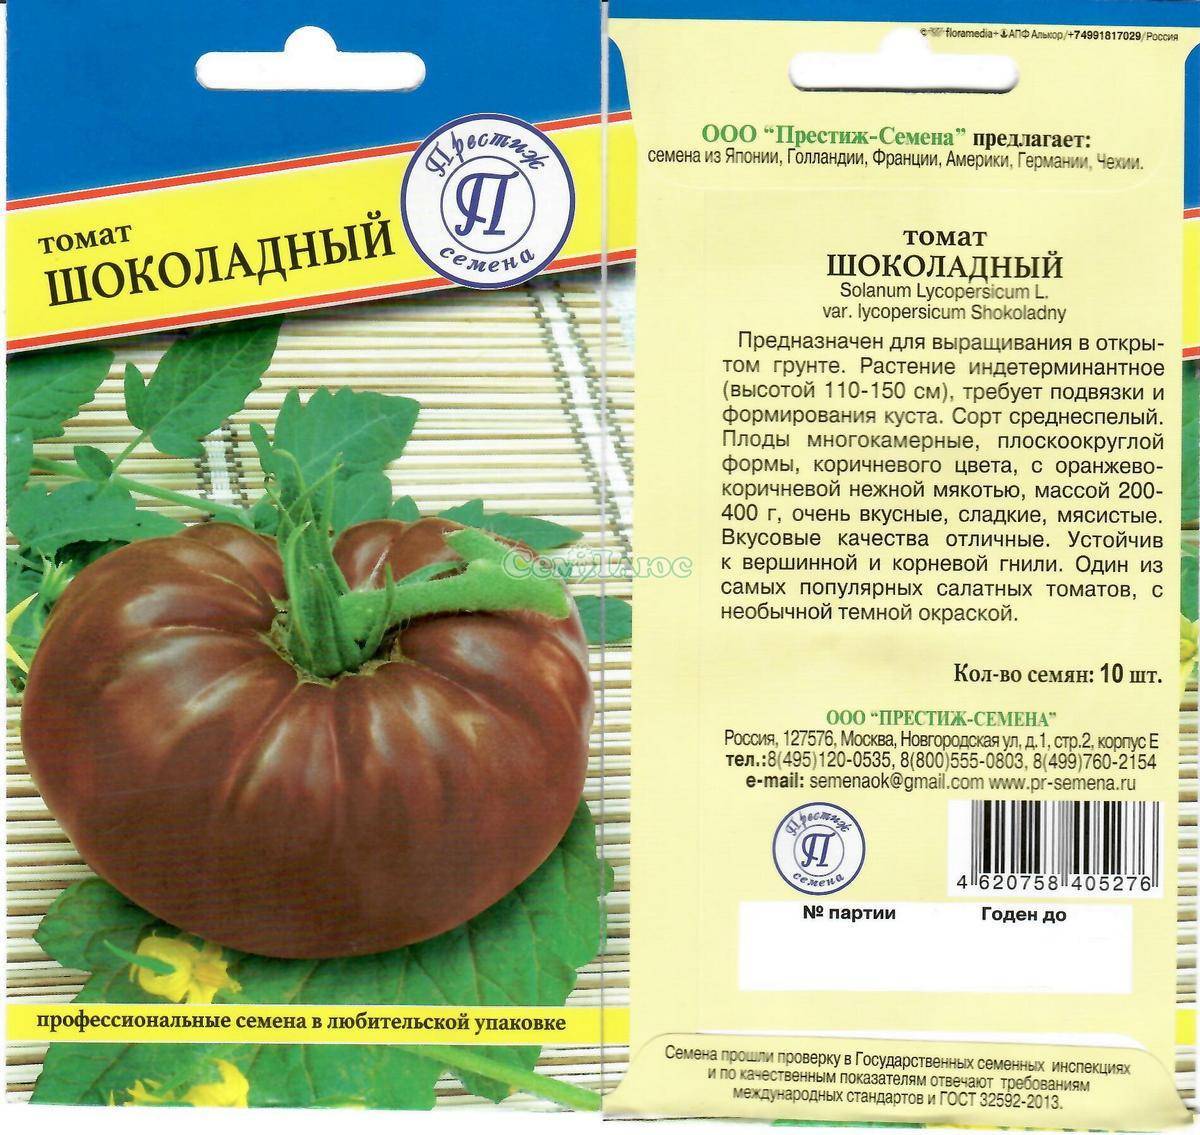 Описание и характеристики сорта томата Шоколадный, технология выращивания